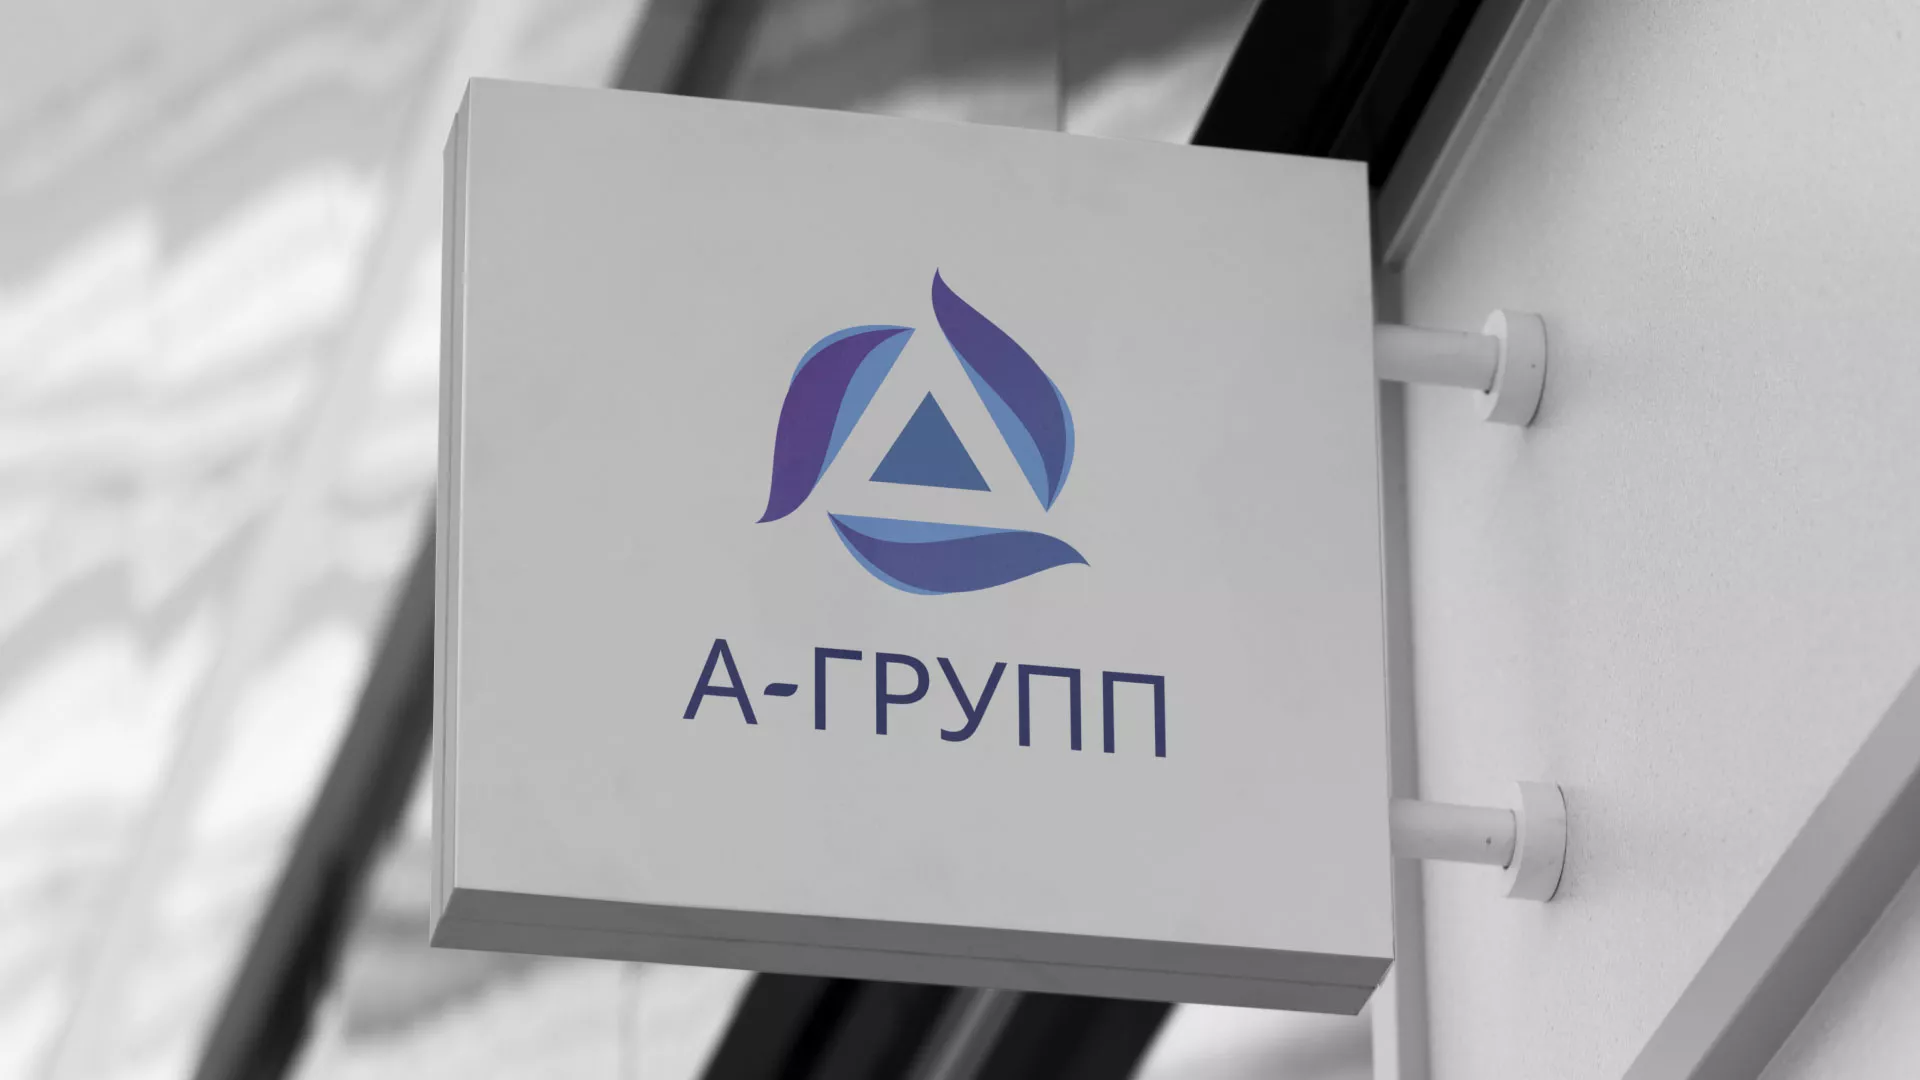 Создание логотипа компании «А-ГРУПП» в Алексеевке